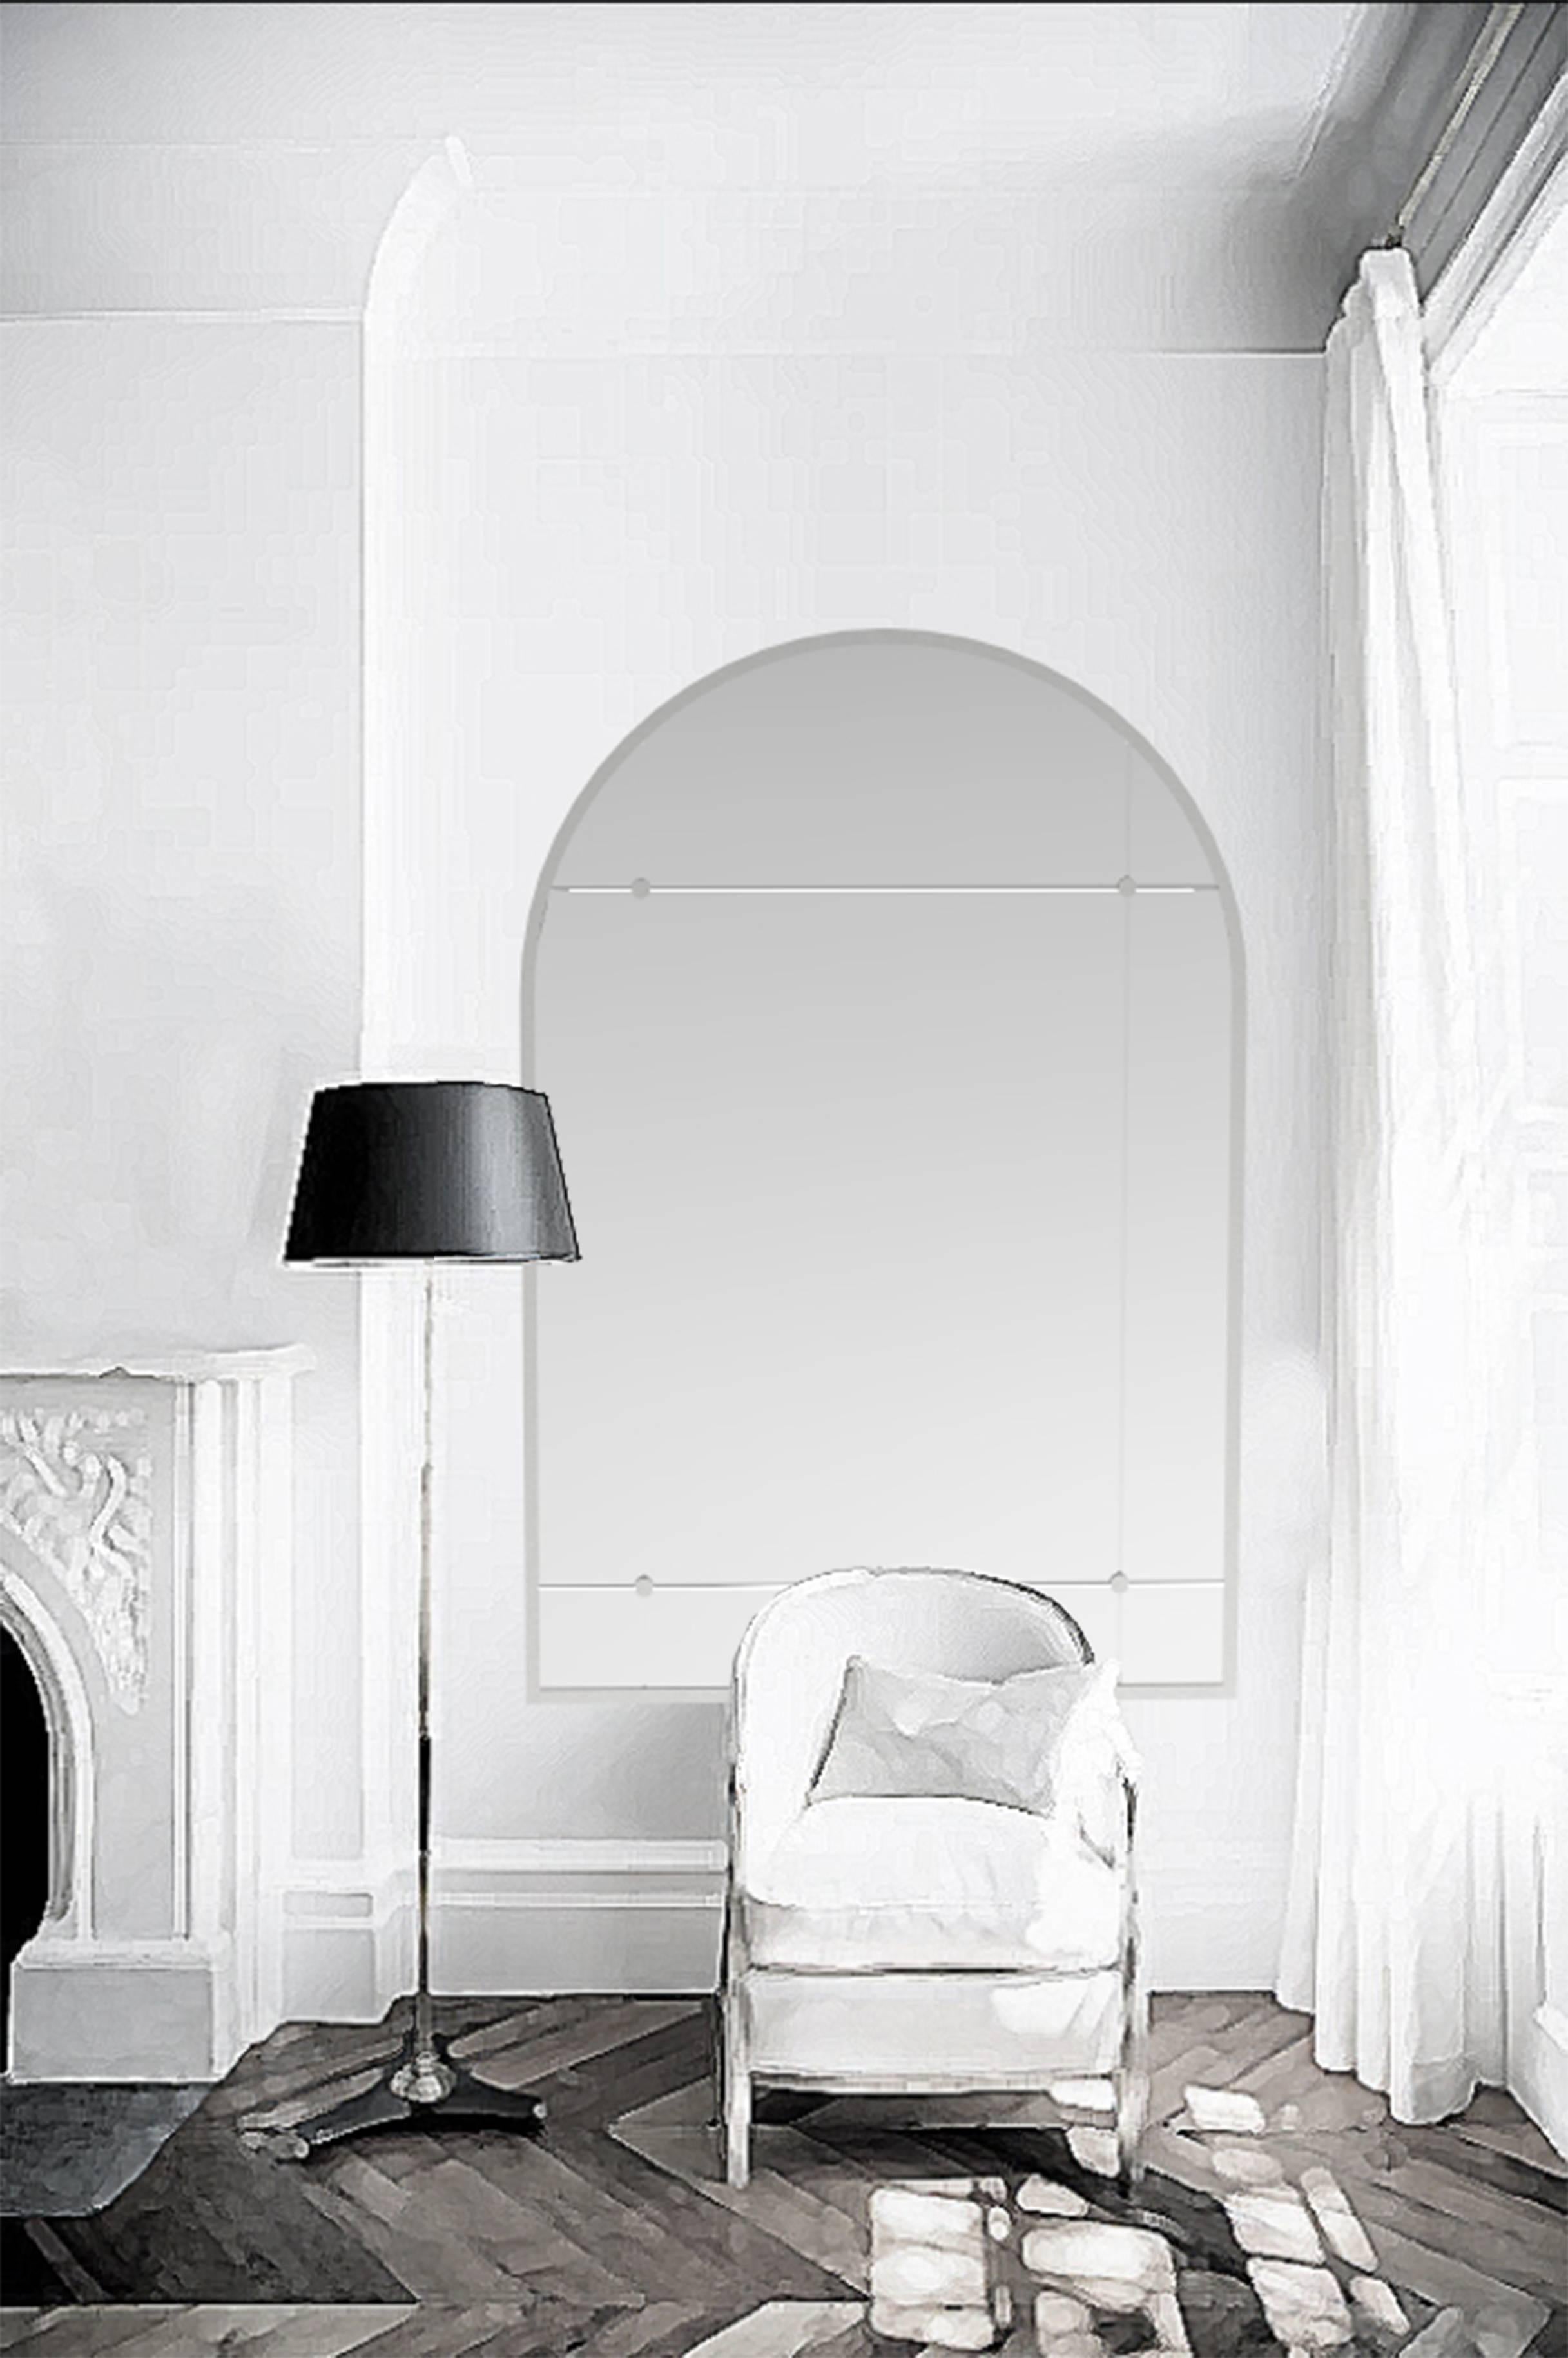 Miroir de style industriel personnalisable avec vitre argentée en fer vieilli. 

Pescetta présente sa collection de miroirs industriels au cadre en fer d'aspect vieilli. Chaque miroir est une pièce unique faite à la main, caractérisée par la qualité